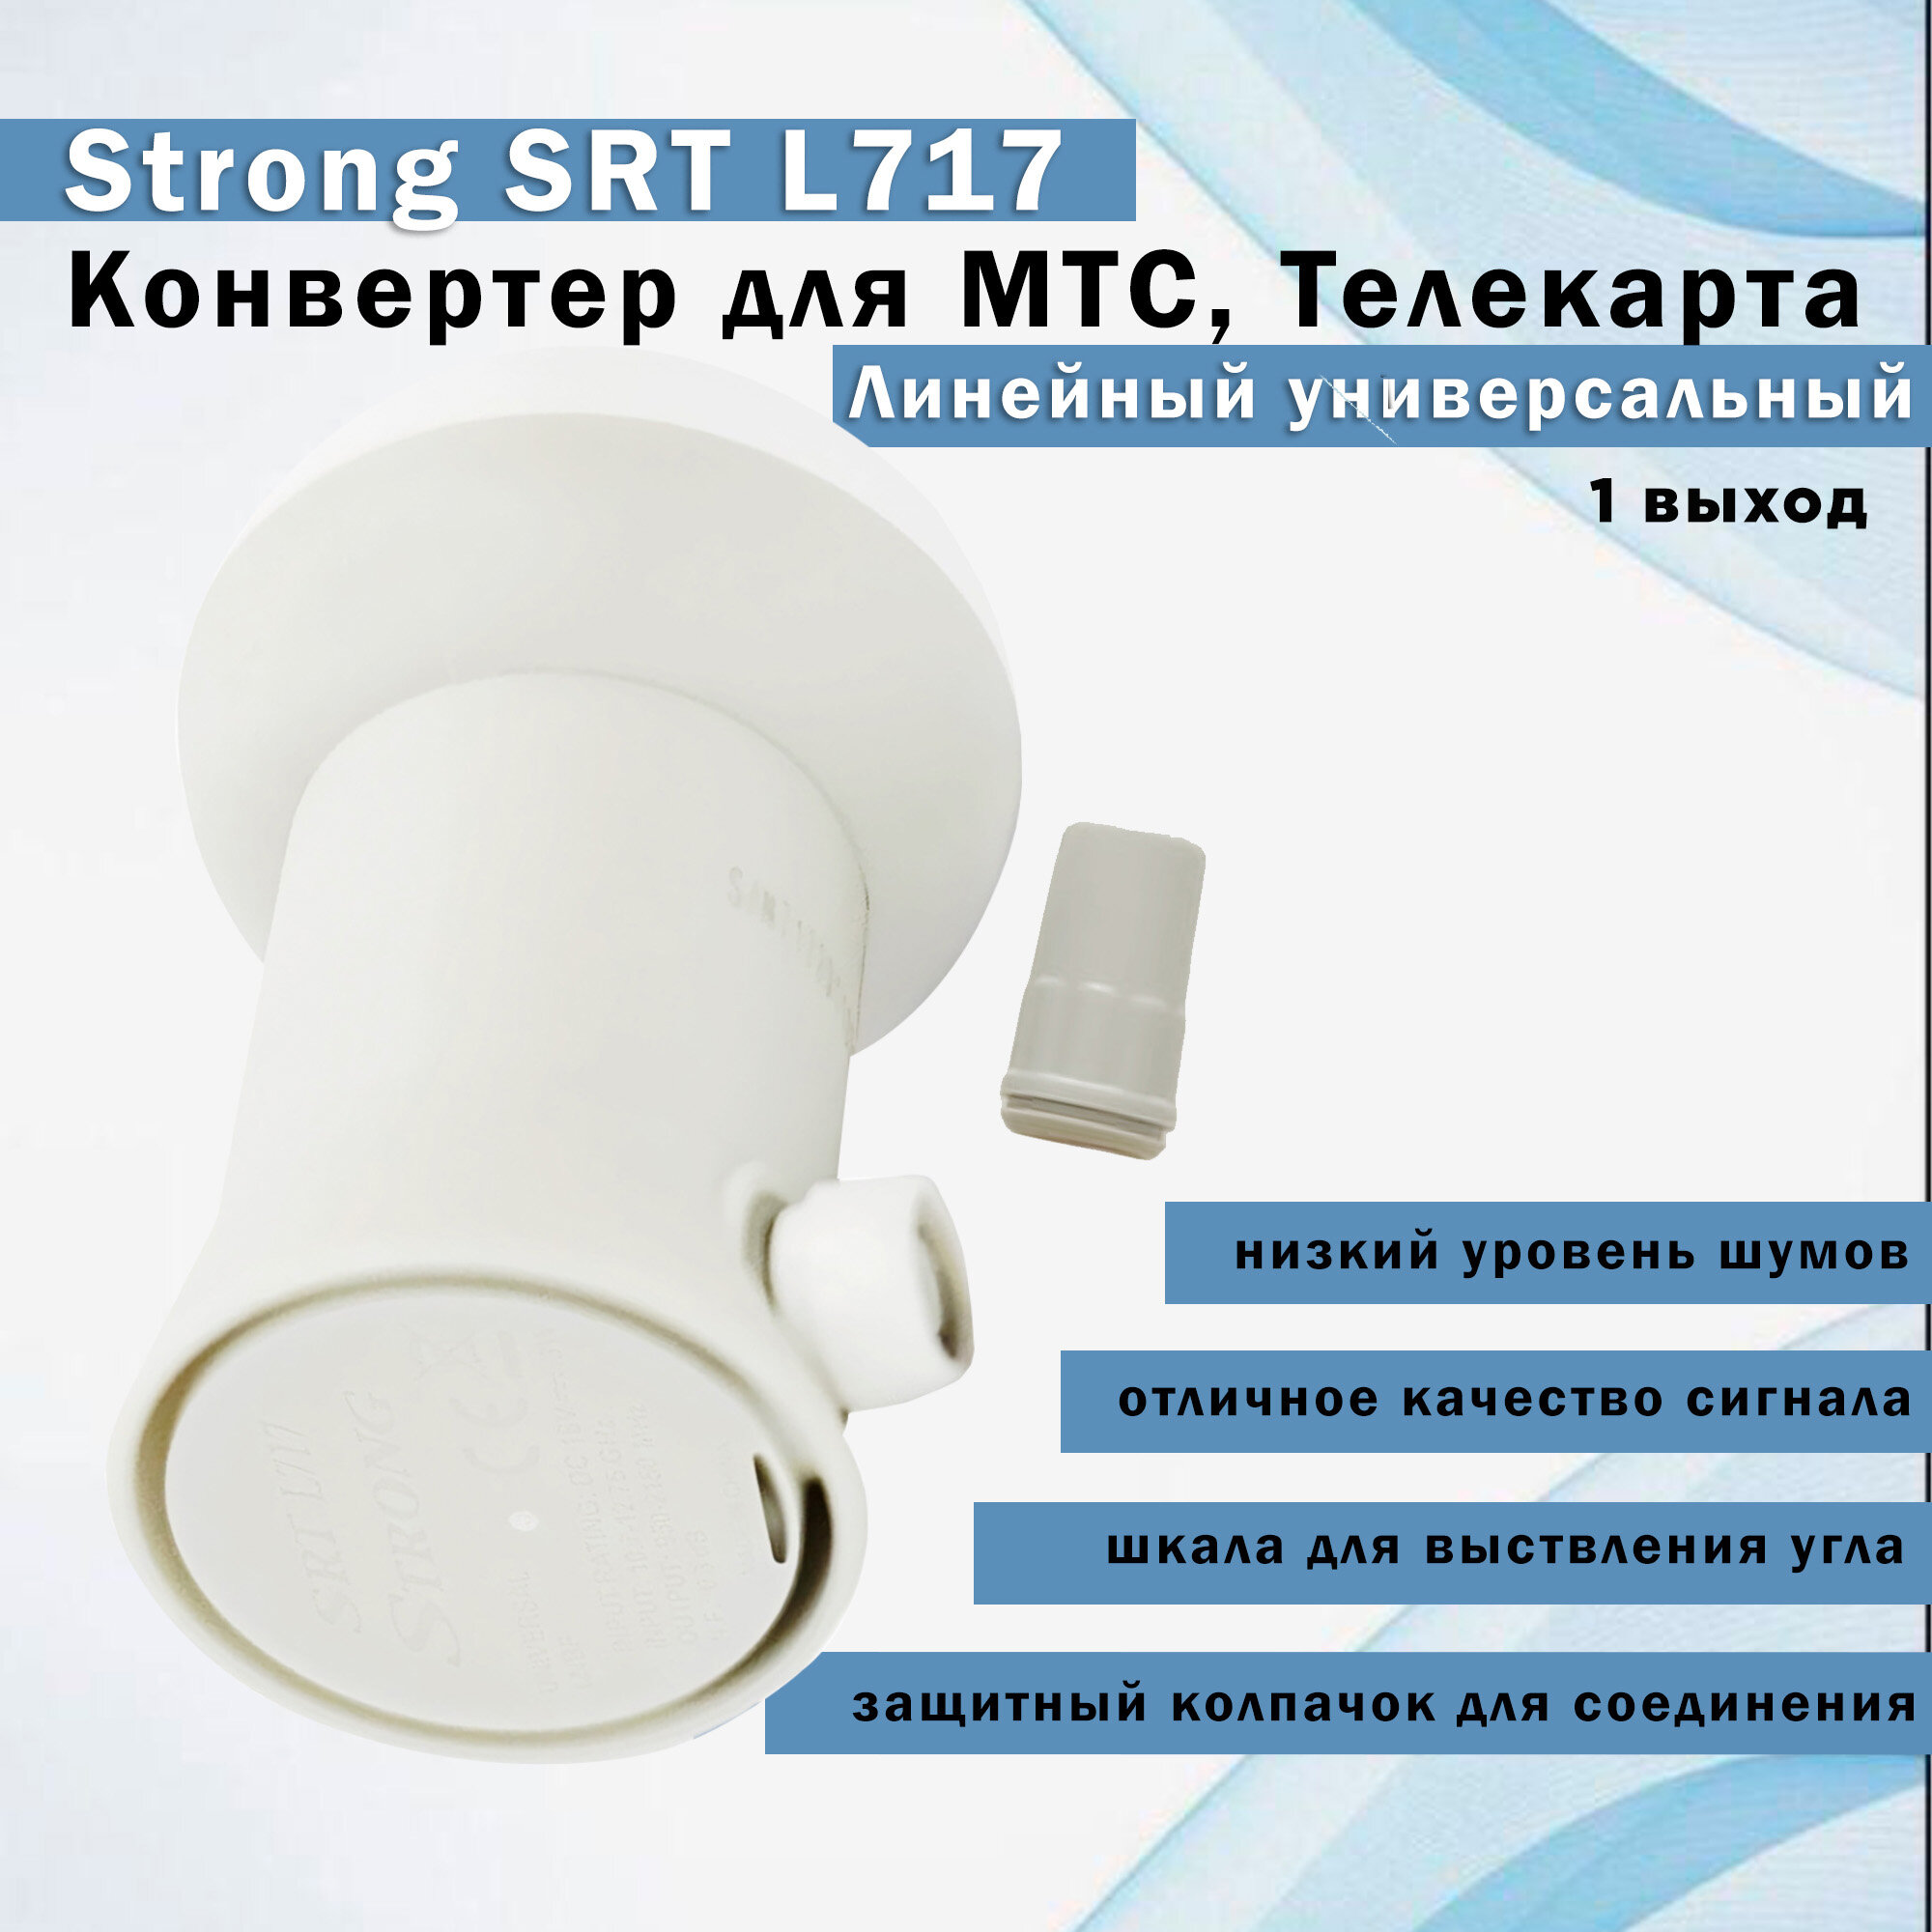 Конвертер линейный универсальный (1 выход) Strong SRT L717 для МТС Телекарта (f-коннекторы в подарок)